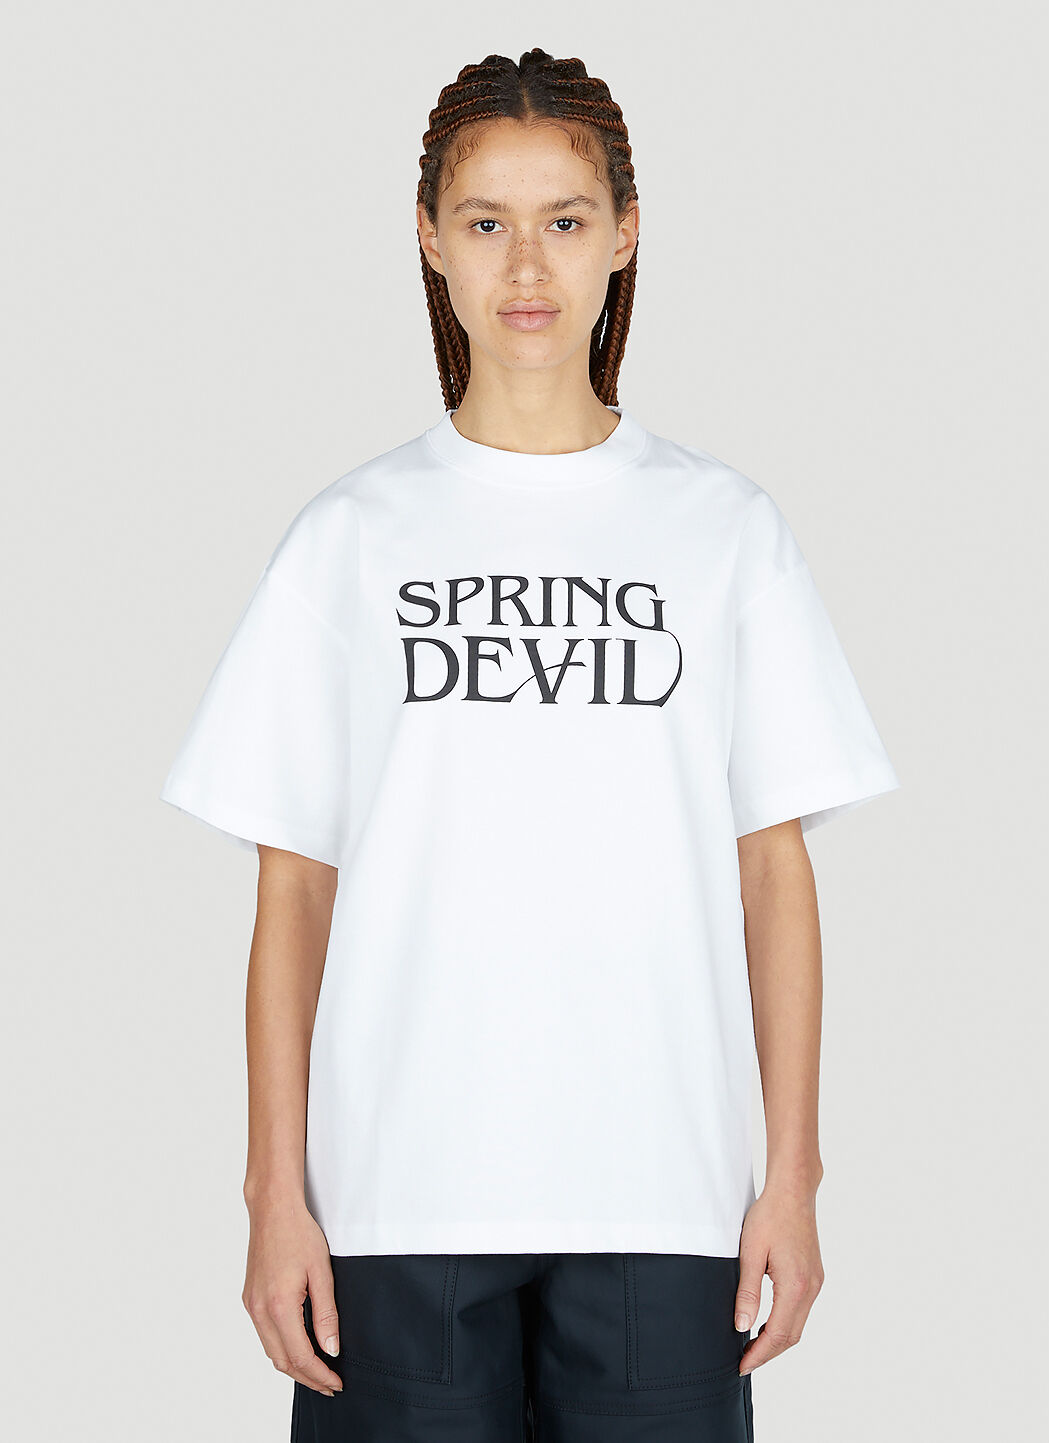 Soulland Spring Devil T 恤 黑色 sld0352003